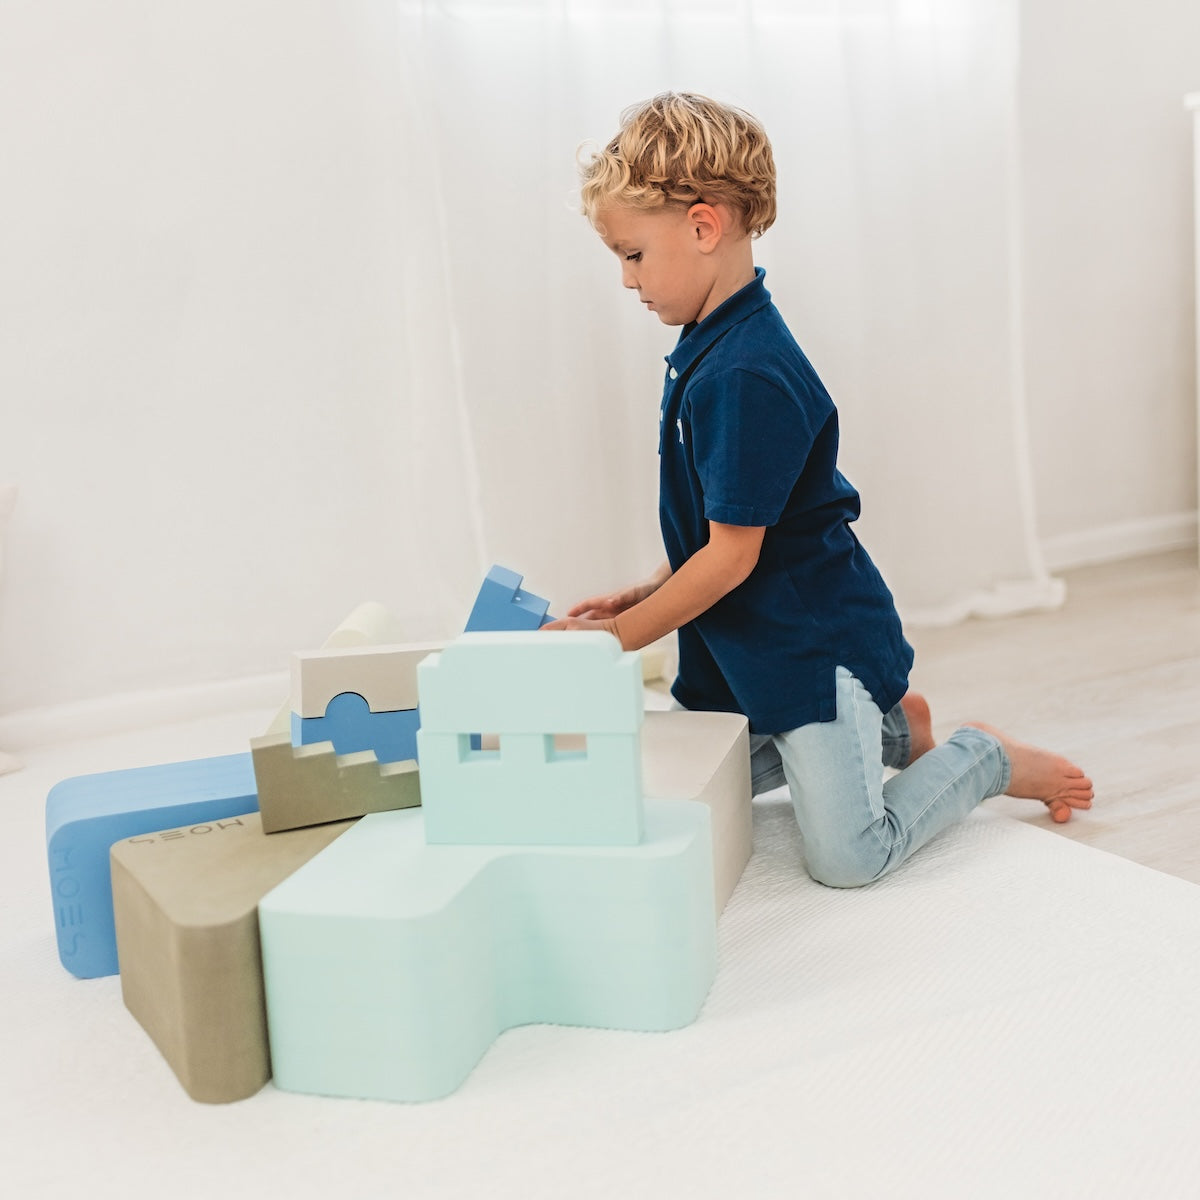 Met het Moes Play Rectangle sky speelblok leert je kindje creatief spelen en wordt de motoriek op een originele manier gestimuleerd. Het speelblok is multifunctioneel en kan op verschillende manieren worden gebruikt om mee te spelen. VanZus